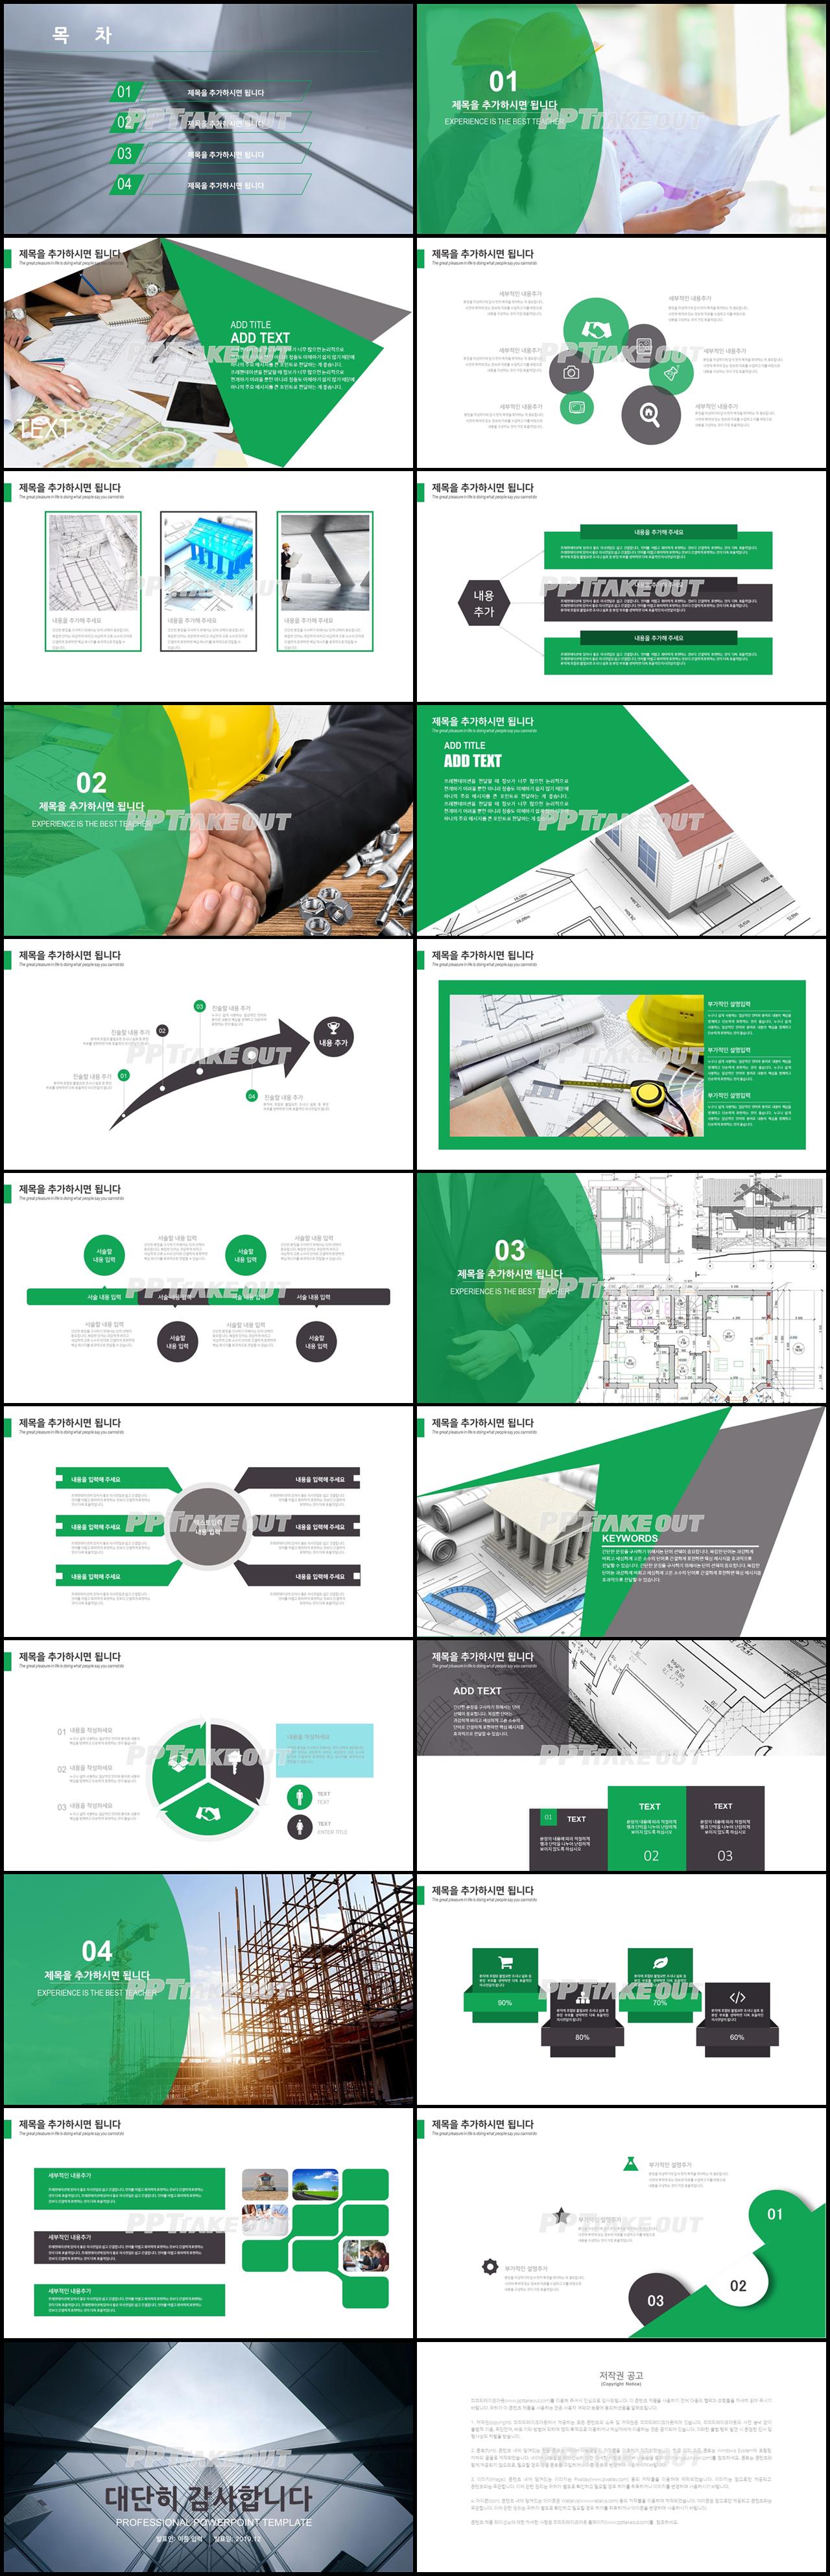 건축설계 초록색 캄캄한 고급스럽운 POWERPOINT탬플릿 사이트 상세보기